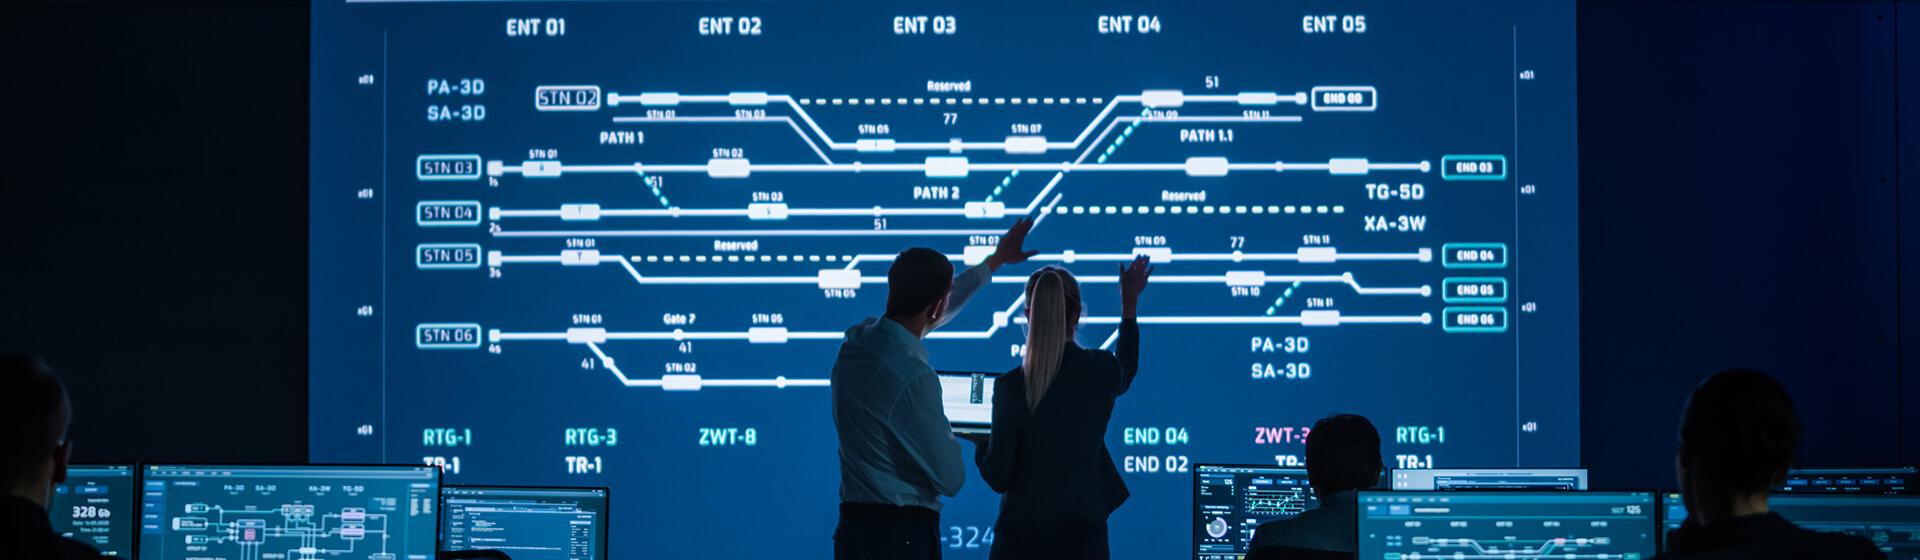 Deux professionnels, un homme et une femme, sont dans une salle de contrôle et interagissent avec un grand écran de surveillance affichant les itinéraires dans un terminal maritime.